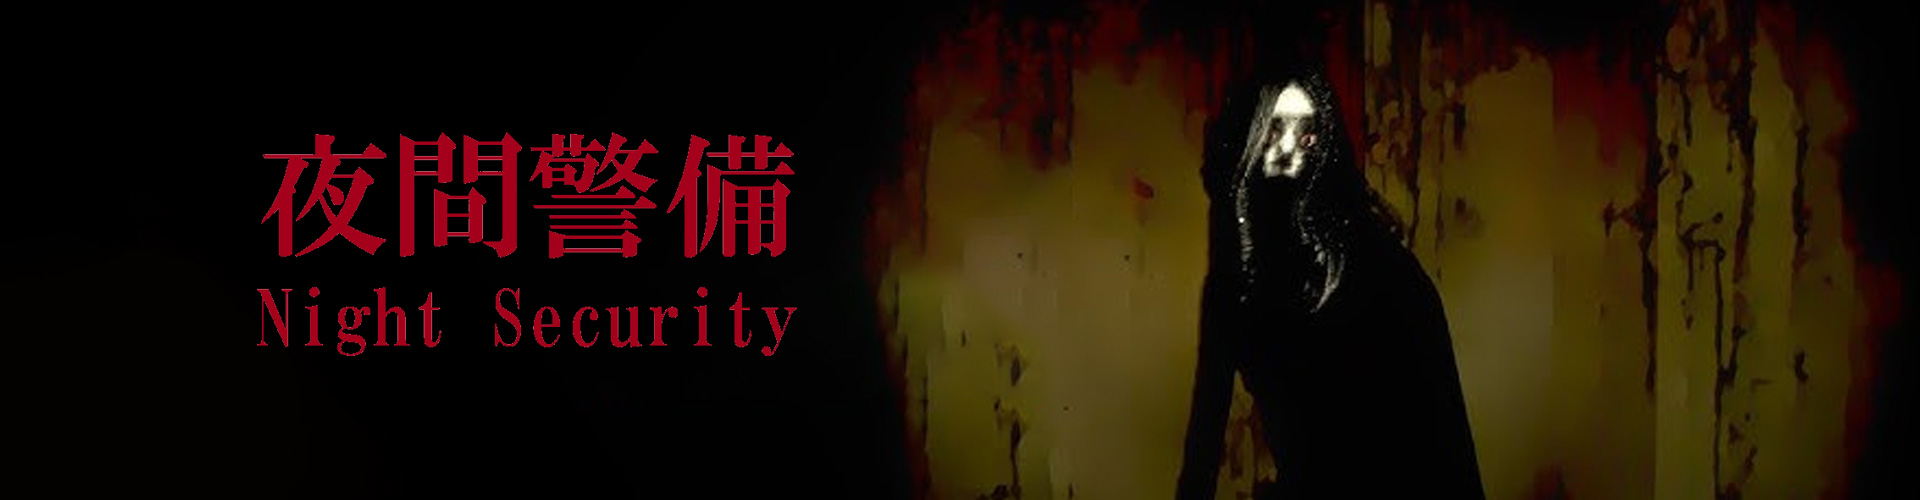 Night Security Ã© um jogo japonÃªs de terror psicolÃ³gico